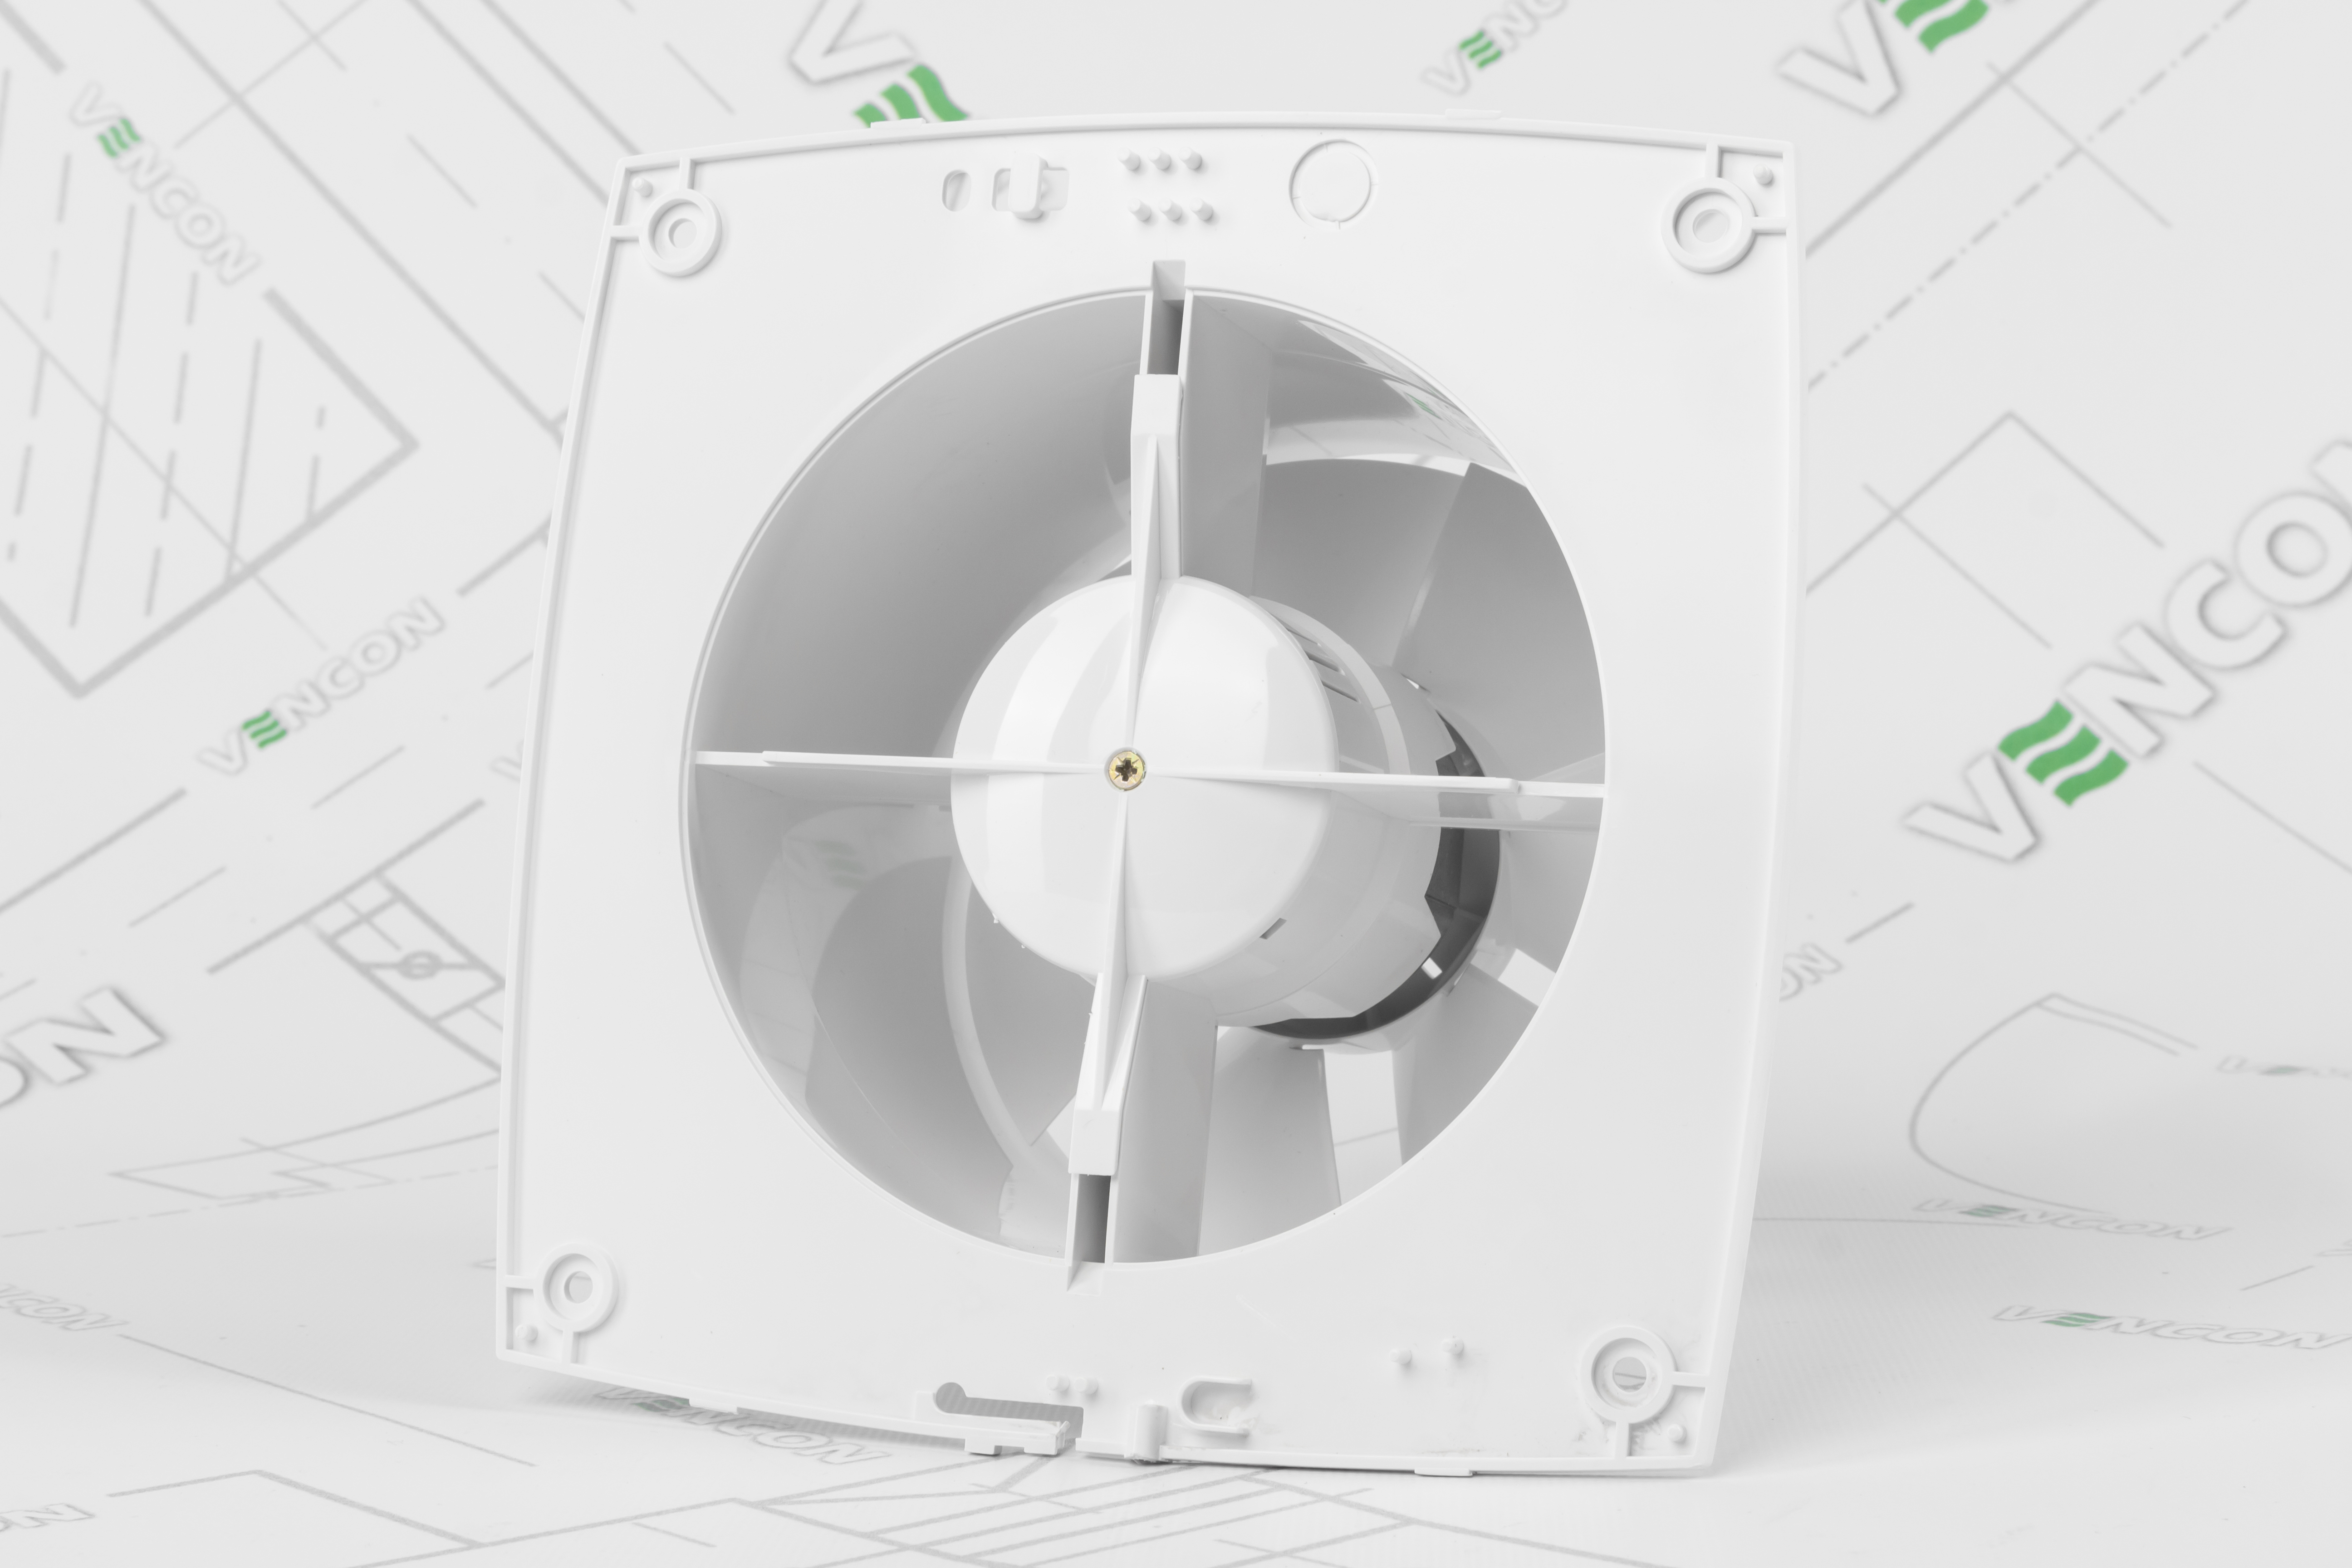 Вытяжной вентилятор Домовент 150 С отзывы - изображения 5